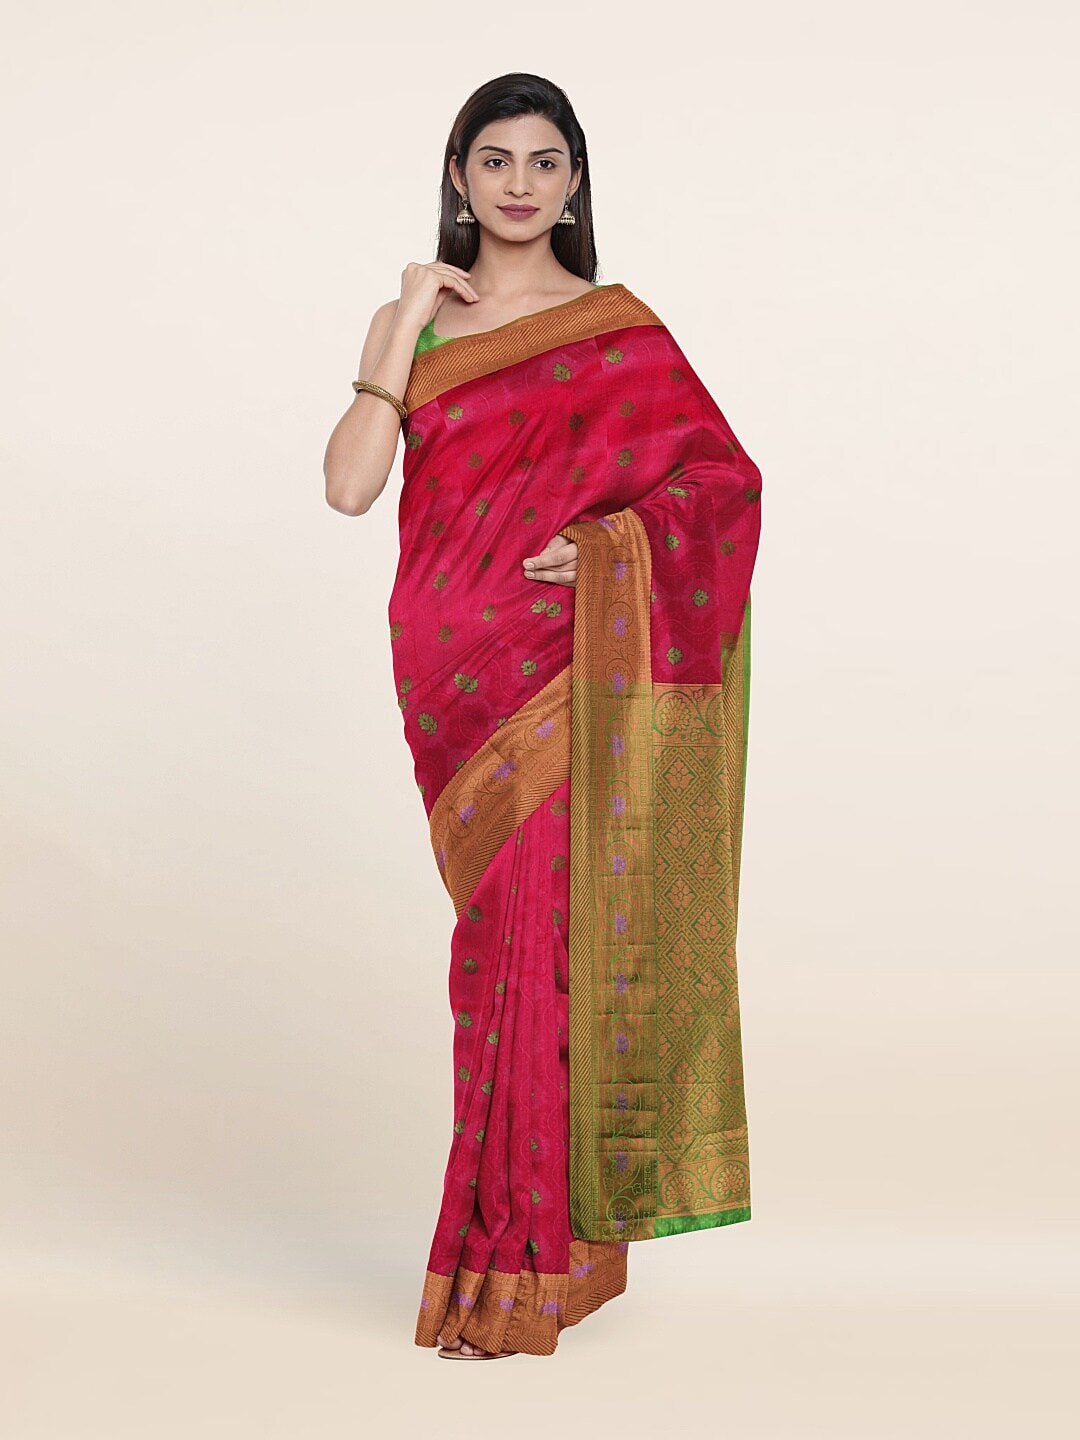 Pothys PWoven Design Zari Pure Silk Saree Price in India